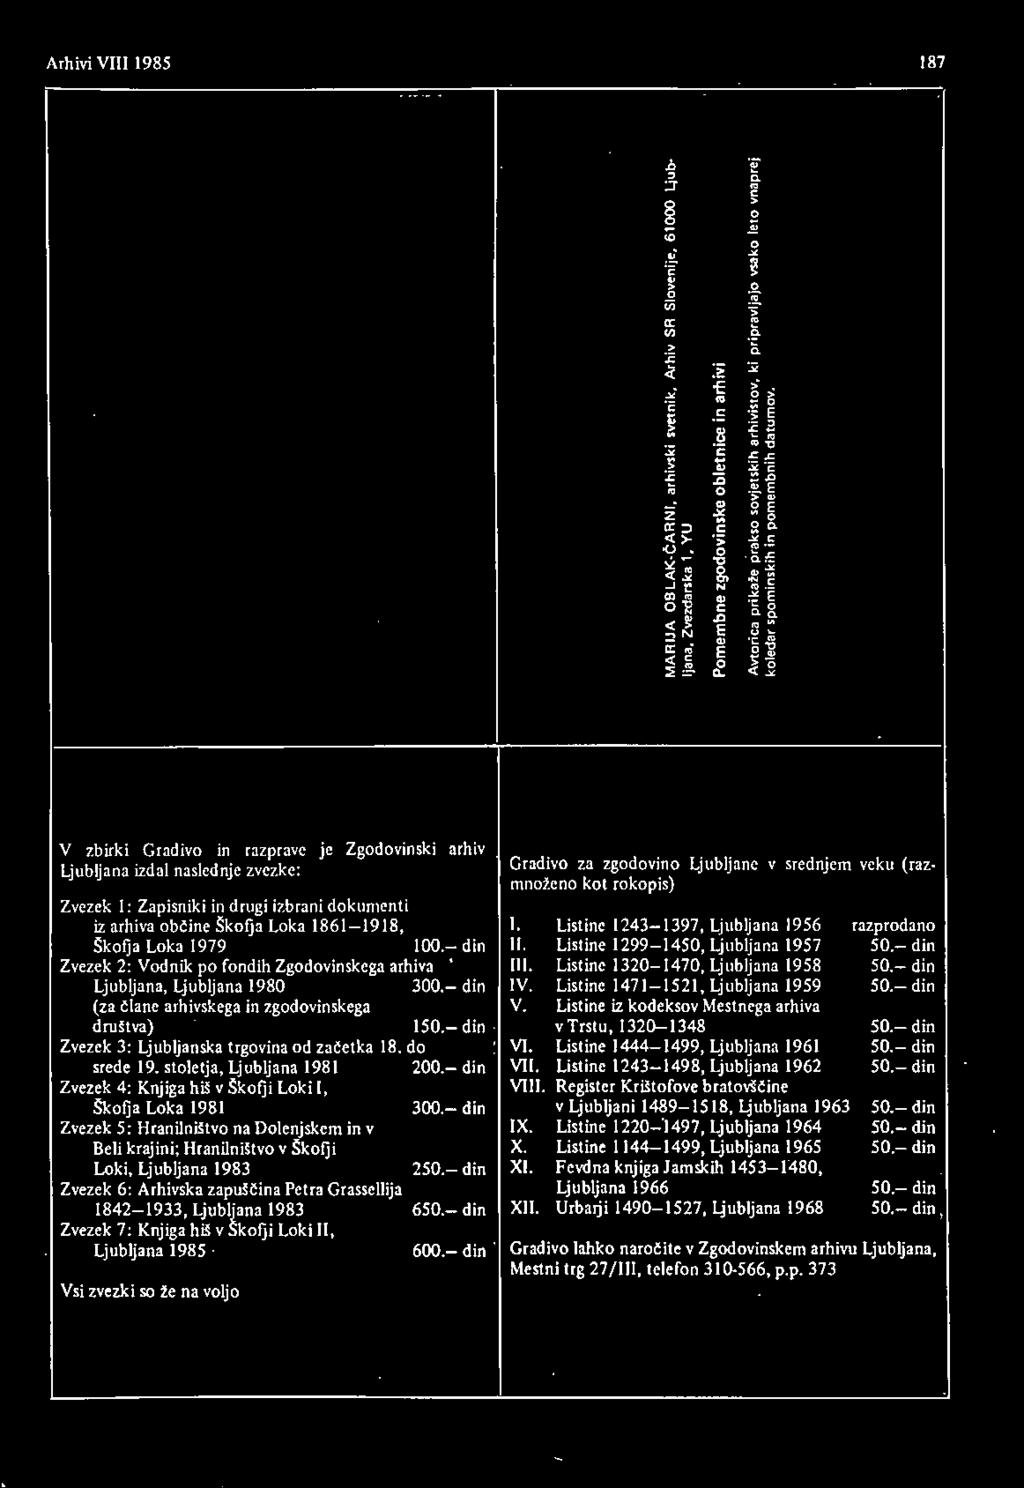 - din Ljubljana, Ljubljana 1980 300- din IV. Listine 1471-1521, Ljubljana 1959 50.- din (za člane arhivskega in zgodovinskega V. Listine iz kodeksov Mestnega arhiva društva) 150.